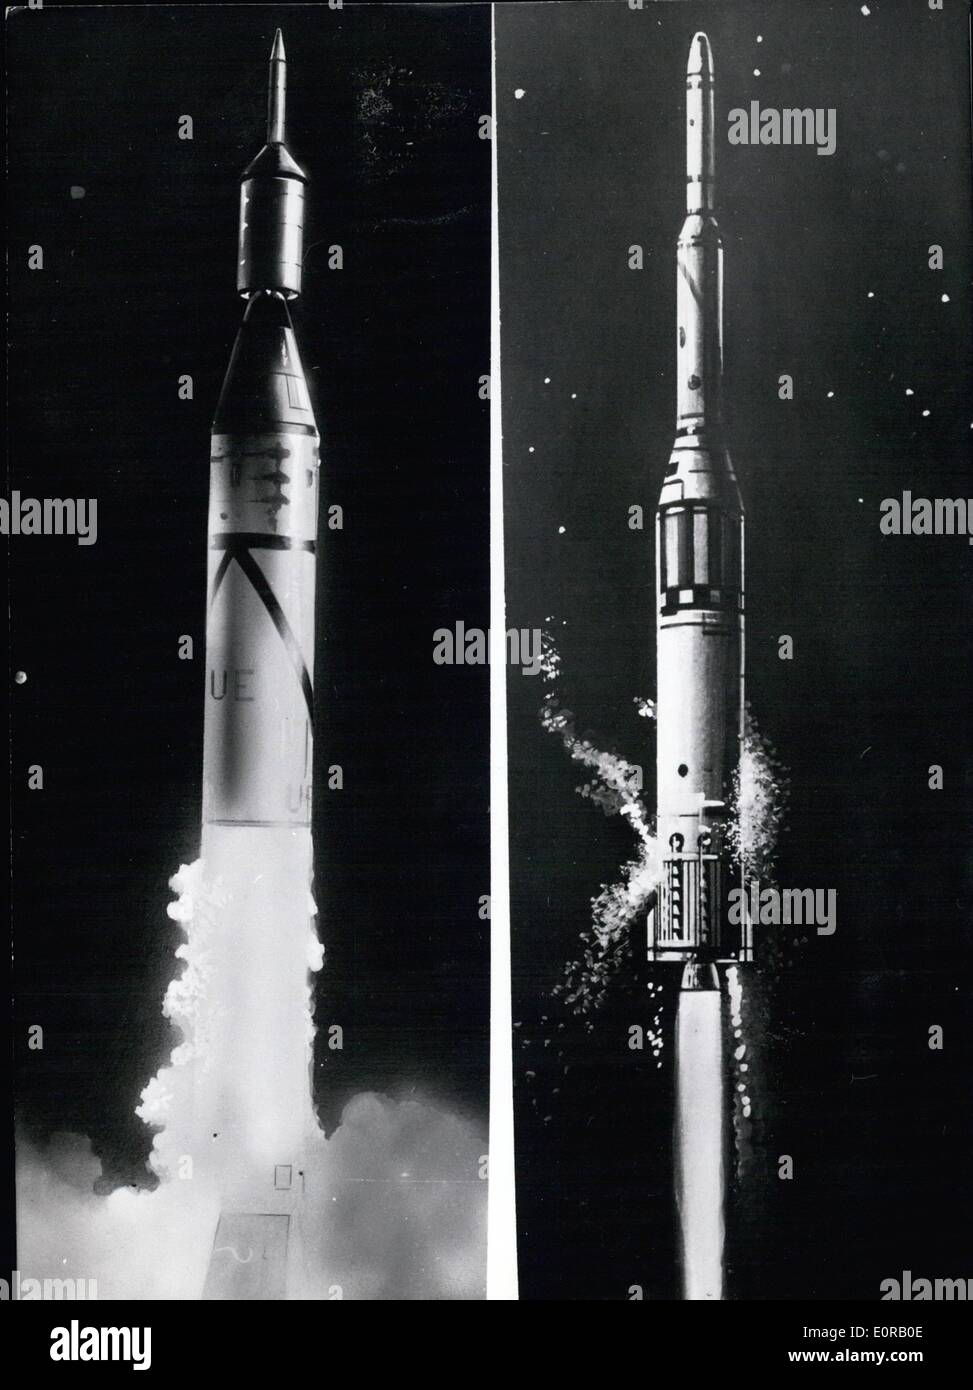 10 octobre 1958 - Wernher von Braun's new Rocket : Dans un avenir très proche, peut-être entre 6e et 10e mois de novembre également Wernher von Braun et son équipe de recherche de l'armée - Nous allons commencer sa plusieurs étapes fusée sur la lune. Wernher von Braun a obtenu l'affirmation de la département de la défense pour lancer deux fusées lune encore cette année. L'aviation américaine avait l'autorisation pour des départs, dont deux déjà arrivé. Le premier démarrage a échoué, après la première étape, a explosé. Le second départ a été un succès complet, cependant la vitesse de départ n'était pas suffisamment élevé pour atteindre la lune Banque D'Images